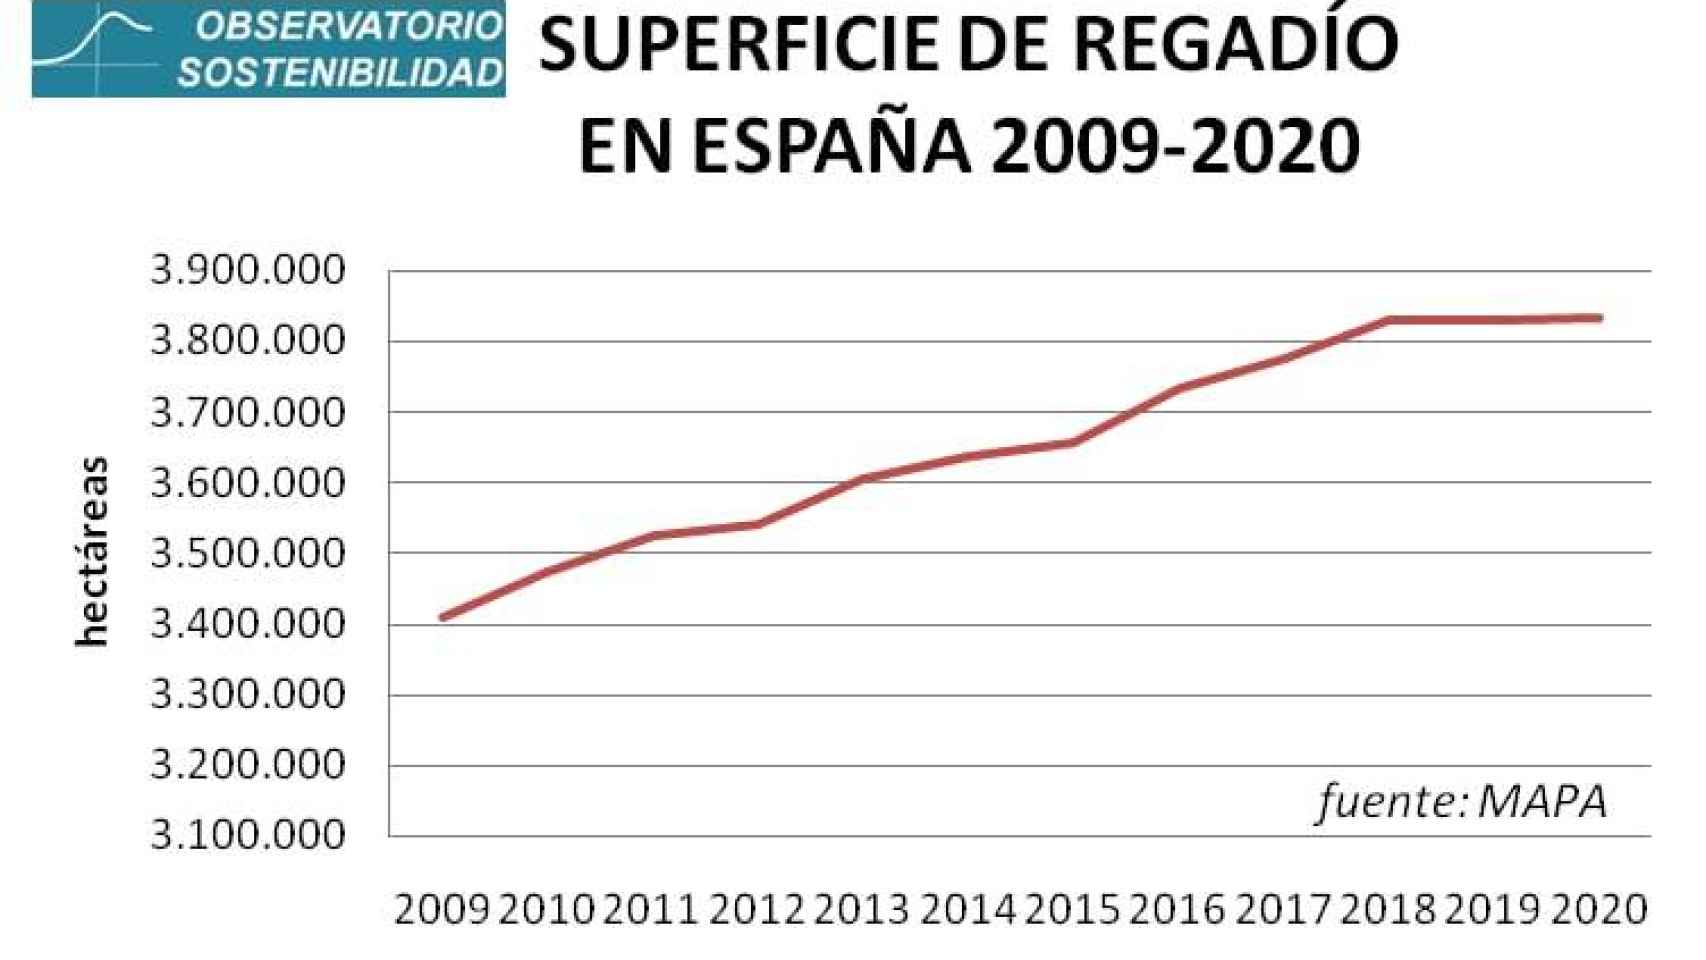 Superficies de regadío en España